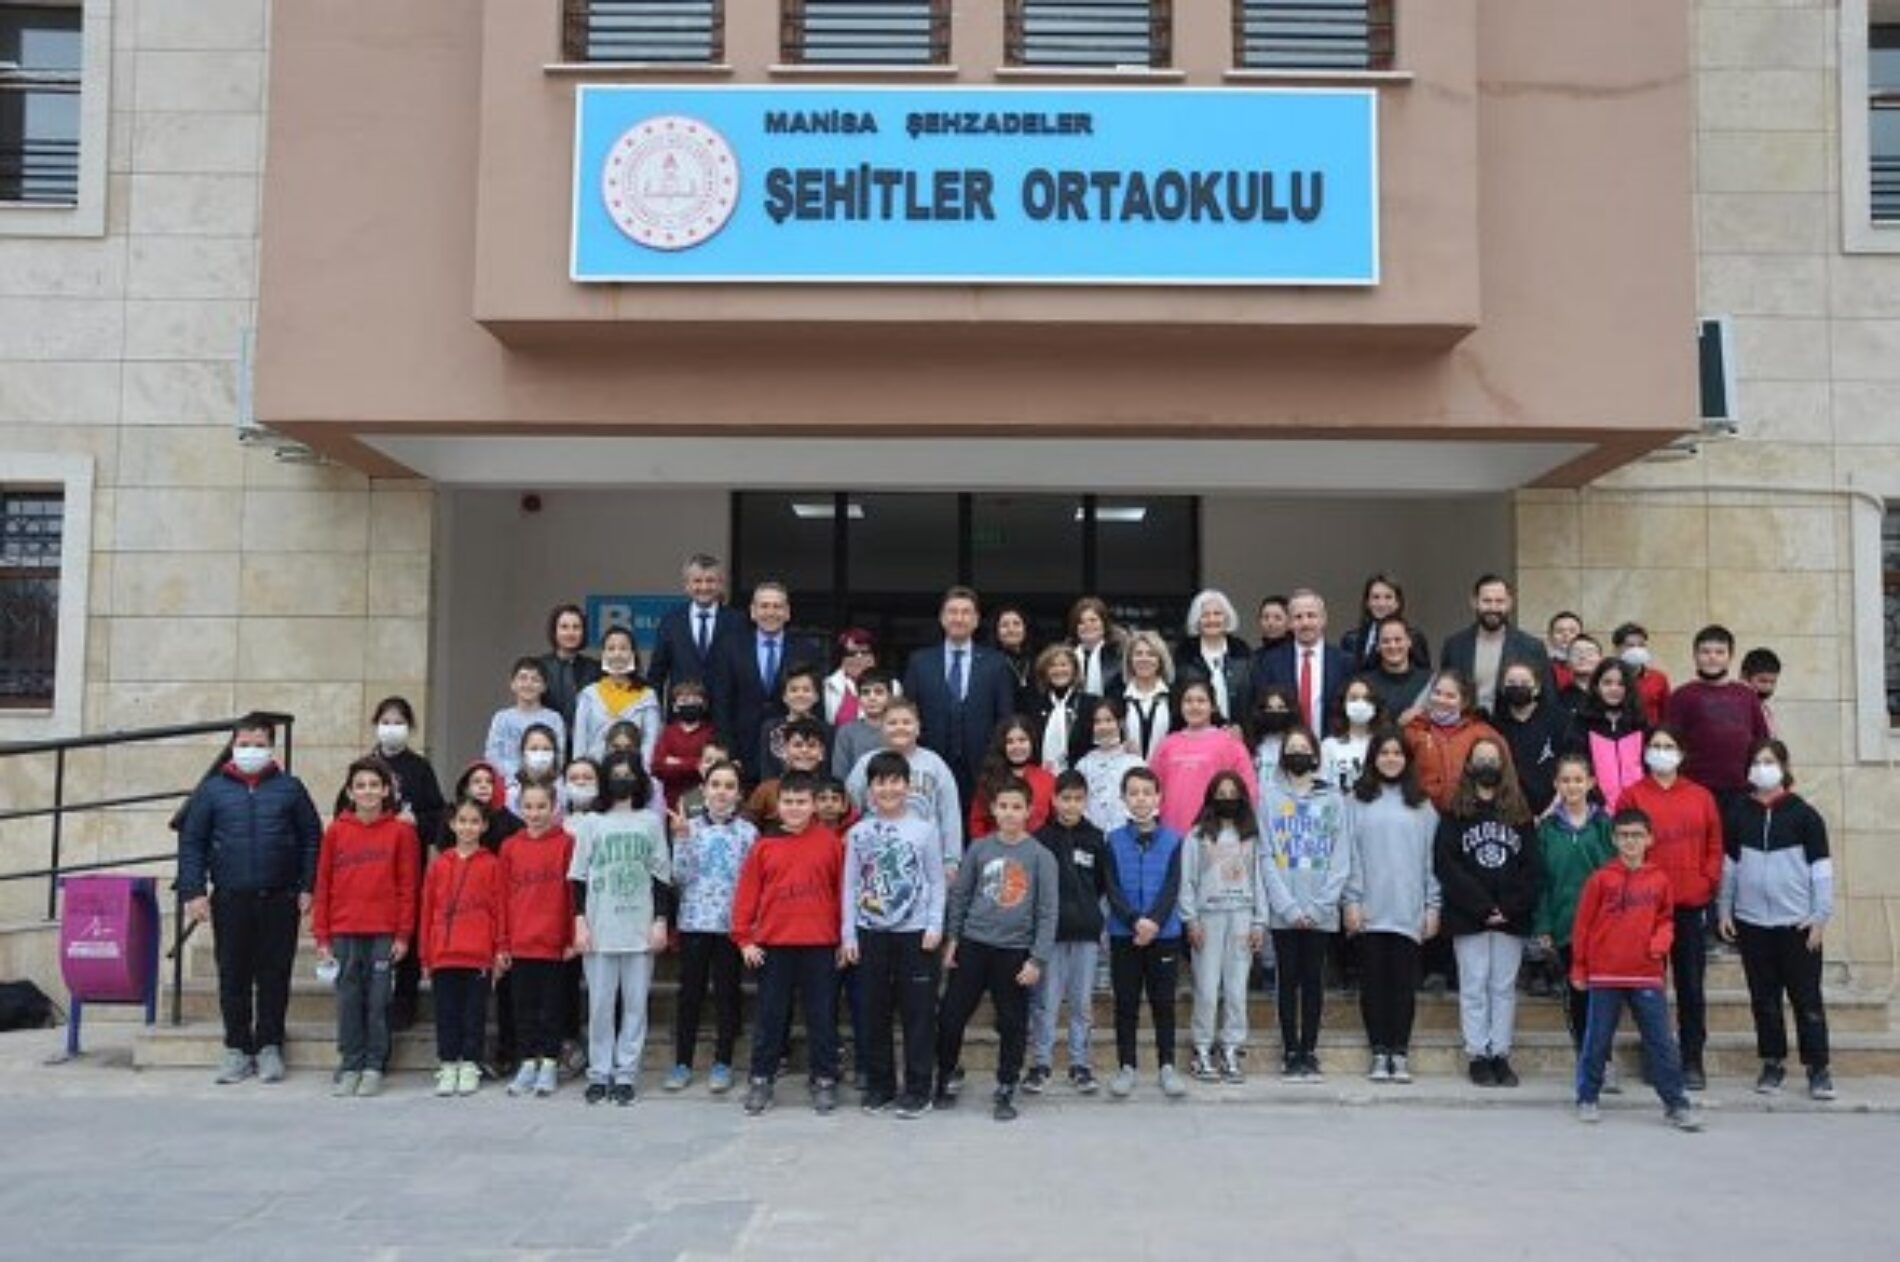 TYSD Manisa Şubemiz Hem Atatürk Köşesi Açılışını Gerçekleştirmiş hem de 139 Çocuğumuza Bot ve Mont Yardımında Bulunmuştur